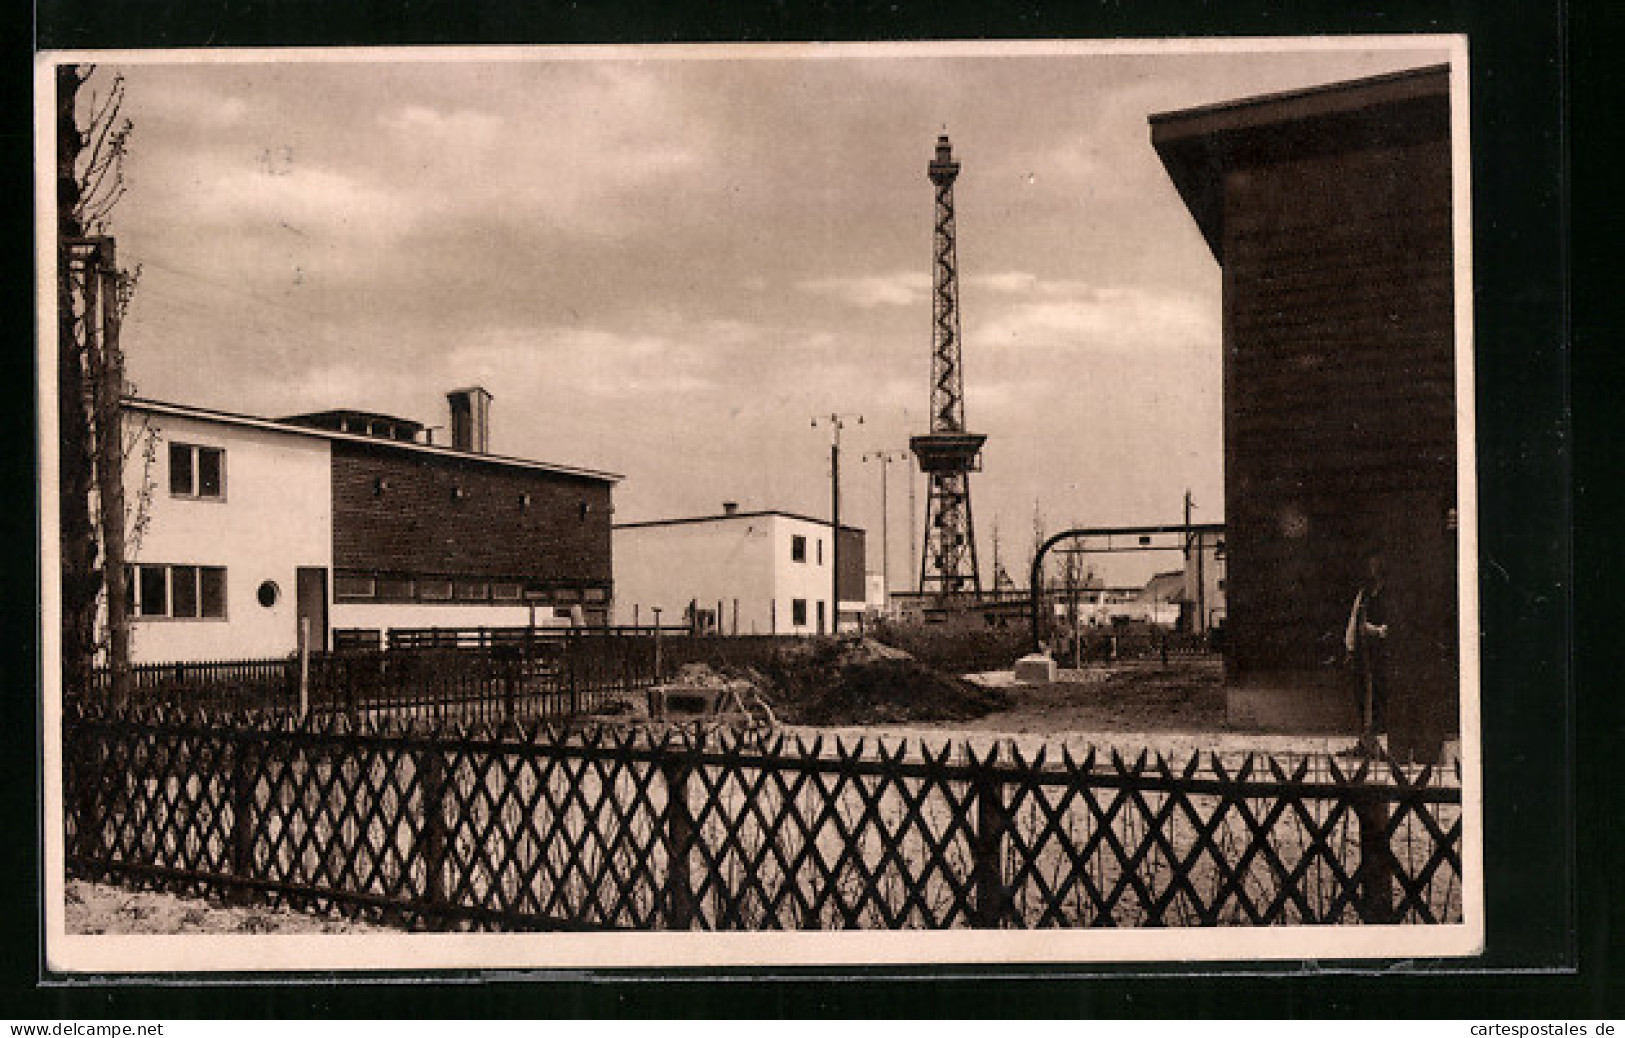 AK Berlin, Deutsche Bauausstellung 1931, Das Dorf Am Funkturm, Der Ländliche Siedlungsbau  - Tentoonstellingen